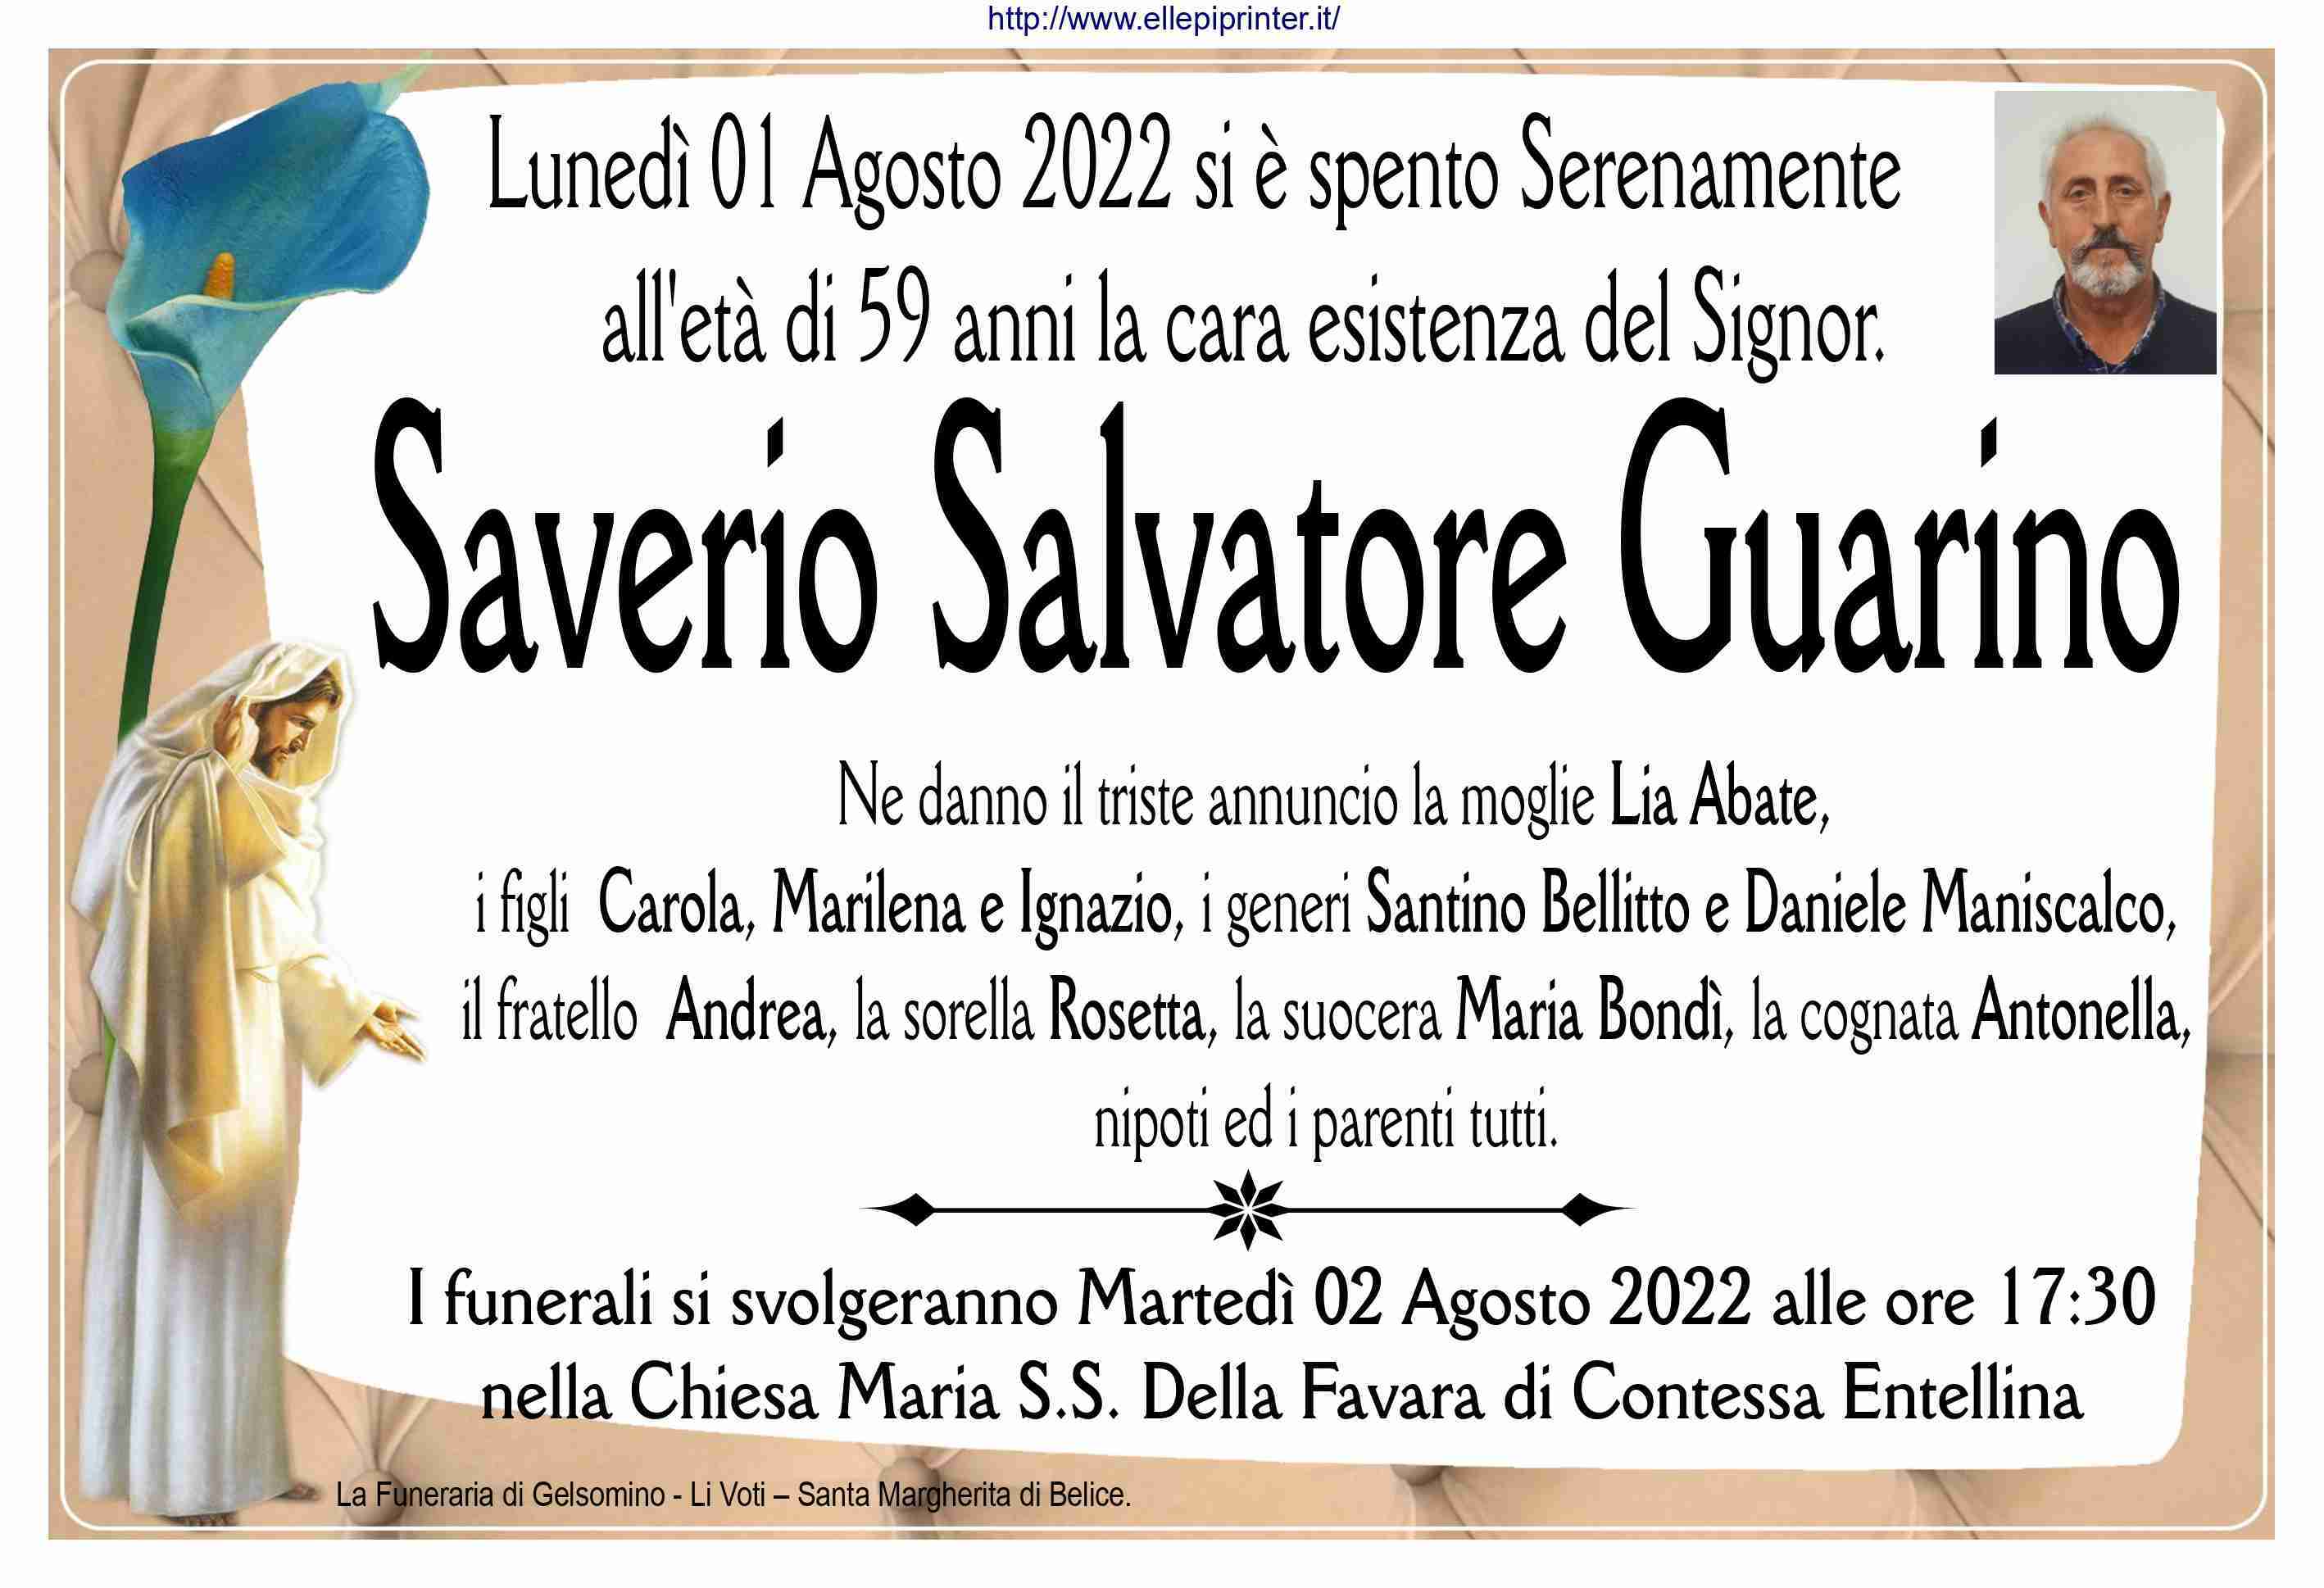 Saverio Salvatore Guarino